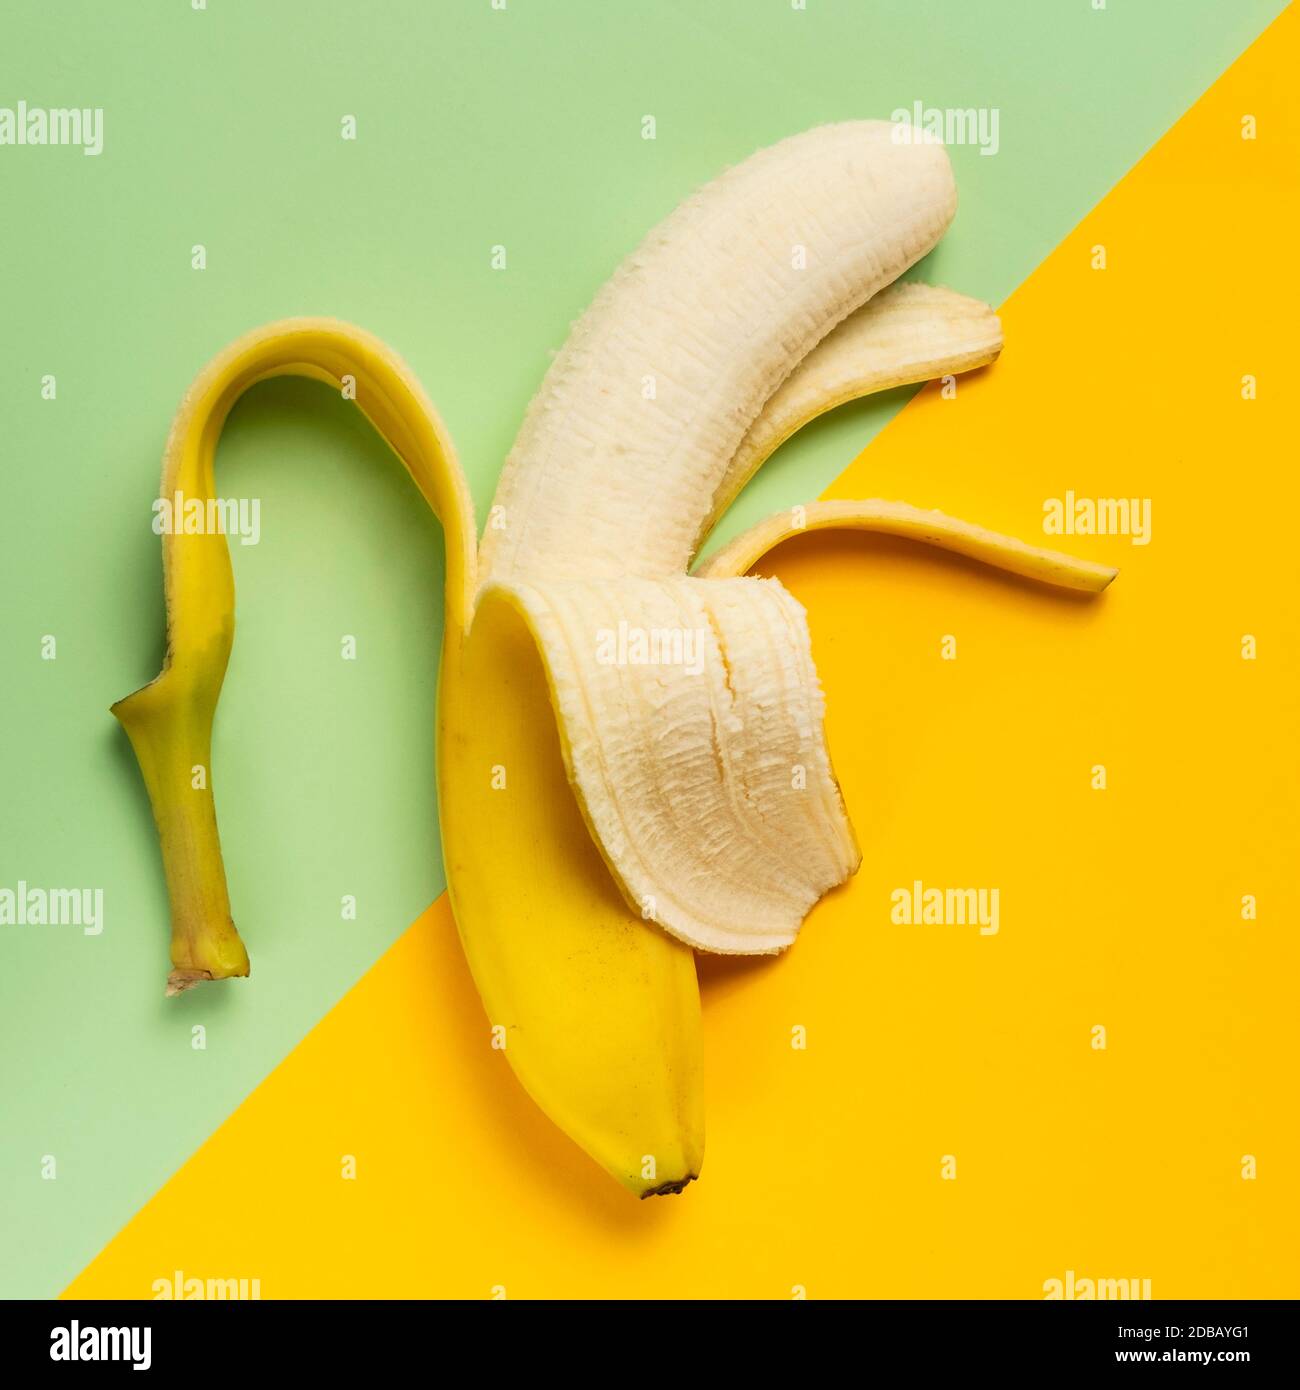 Halb geschälte Banane auf grünem und gelbem Hintergrund Stockfoto